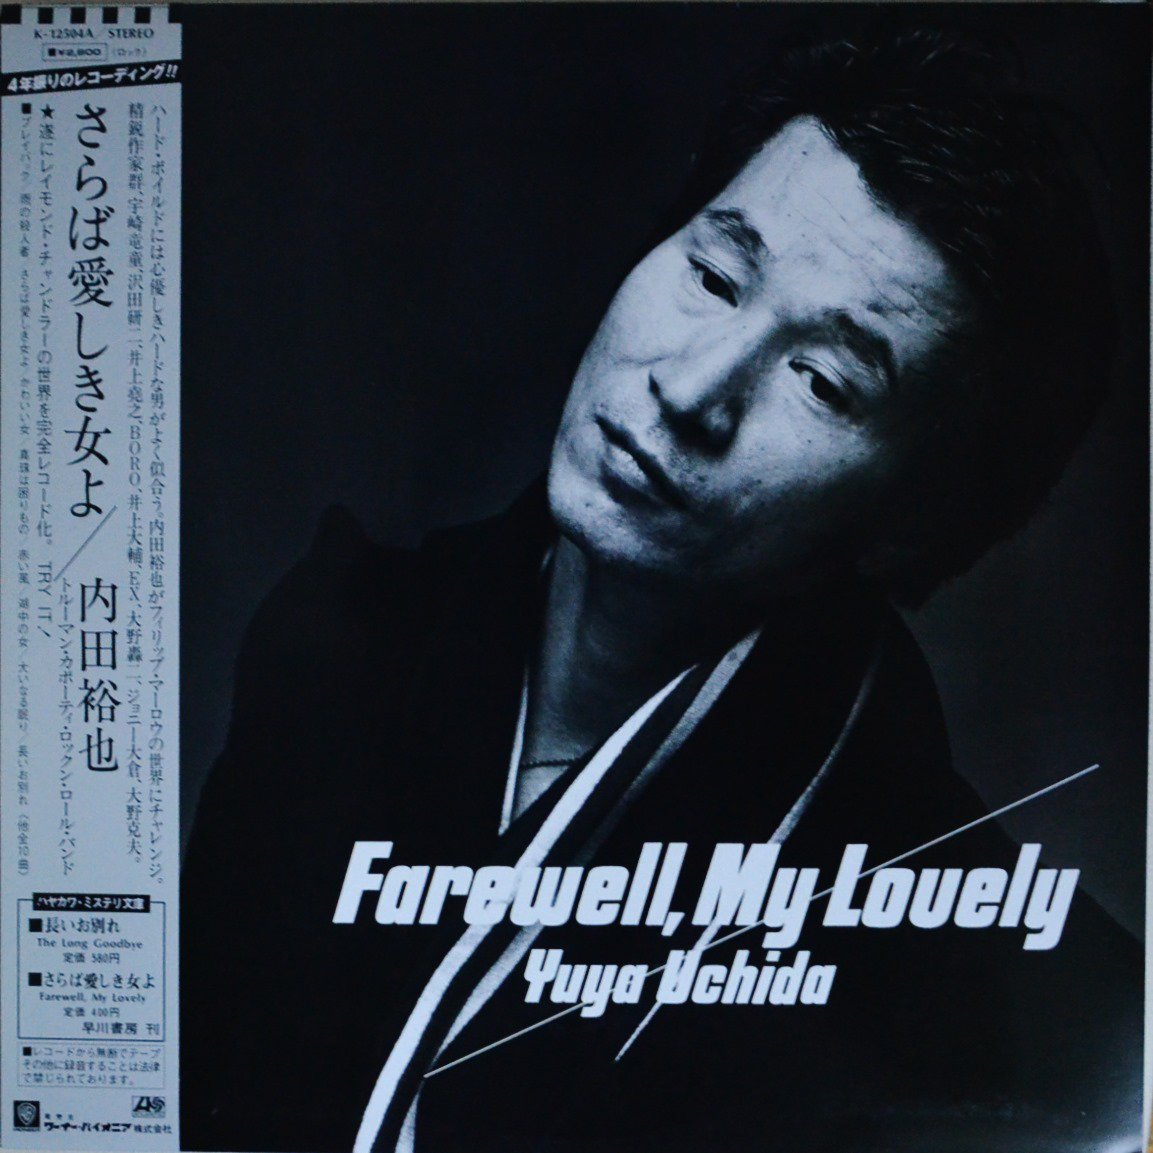 内田裕也 YUYA UCHIDA / さらば愛しき女よ FAREWELL,MY LOVELY (LP)